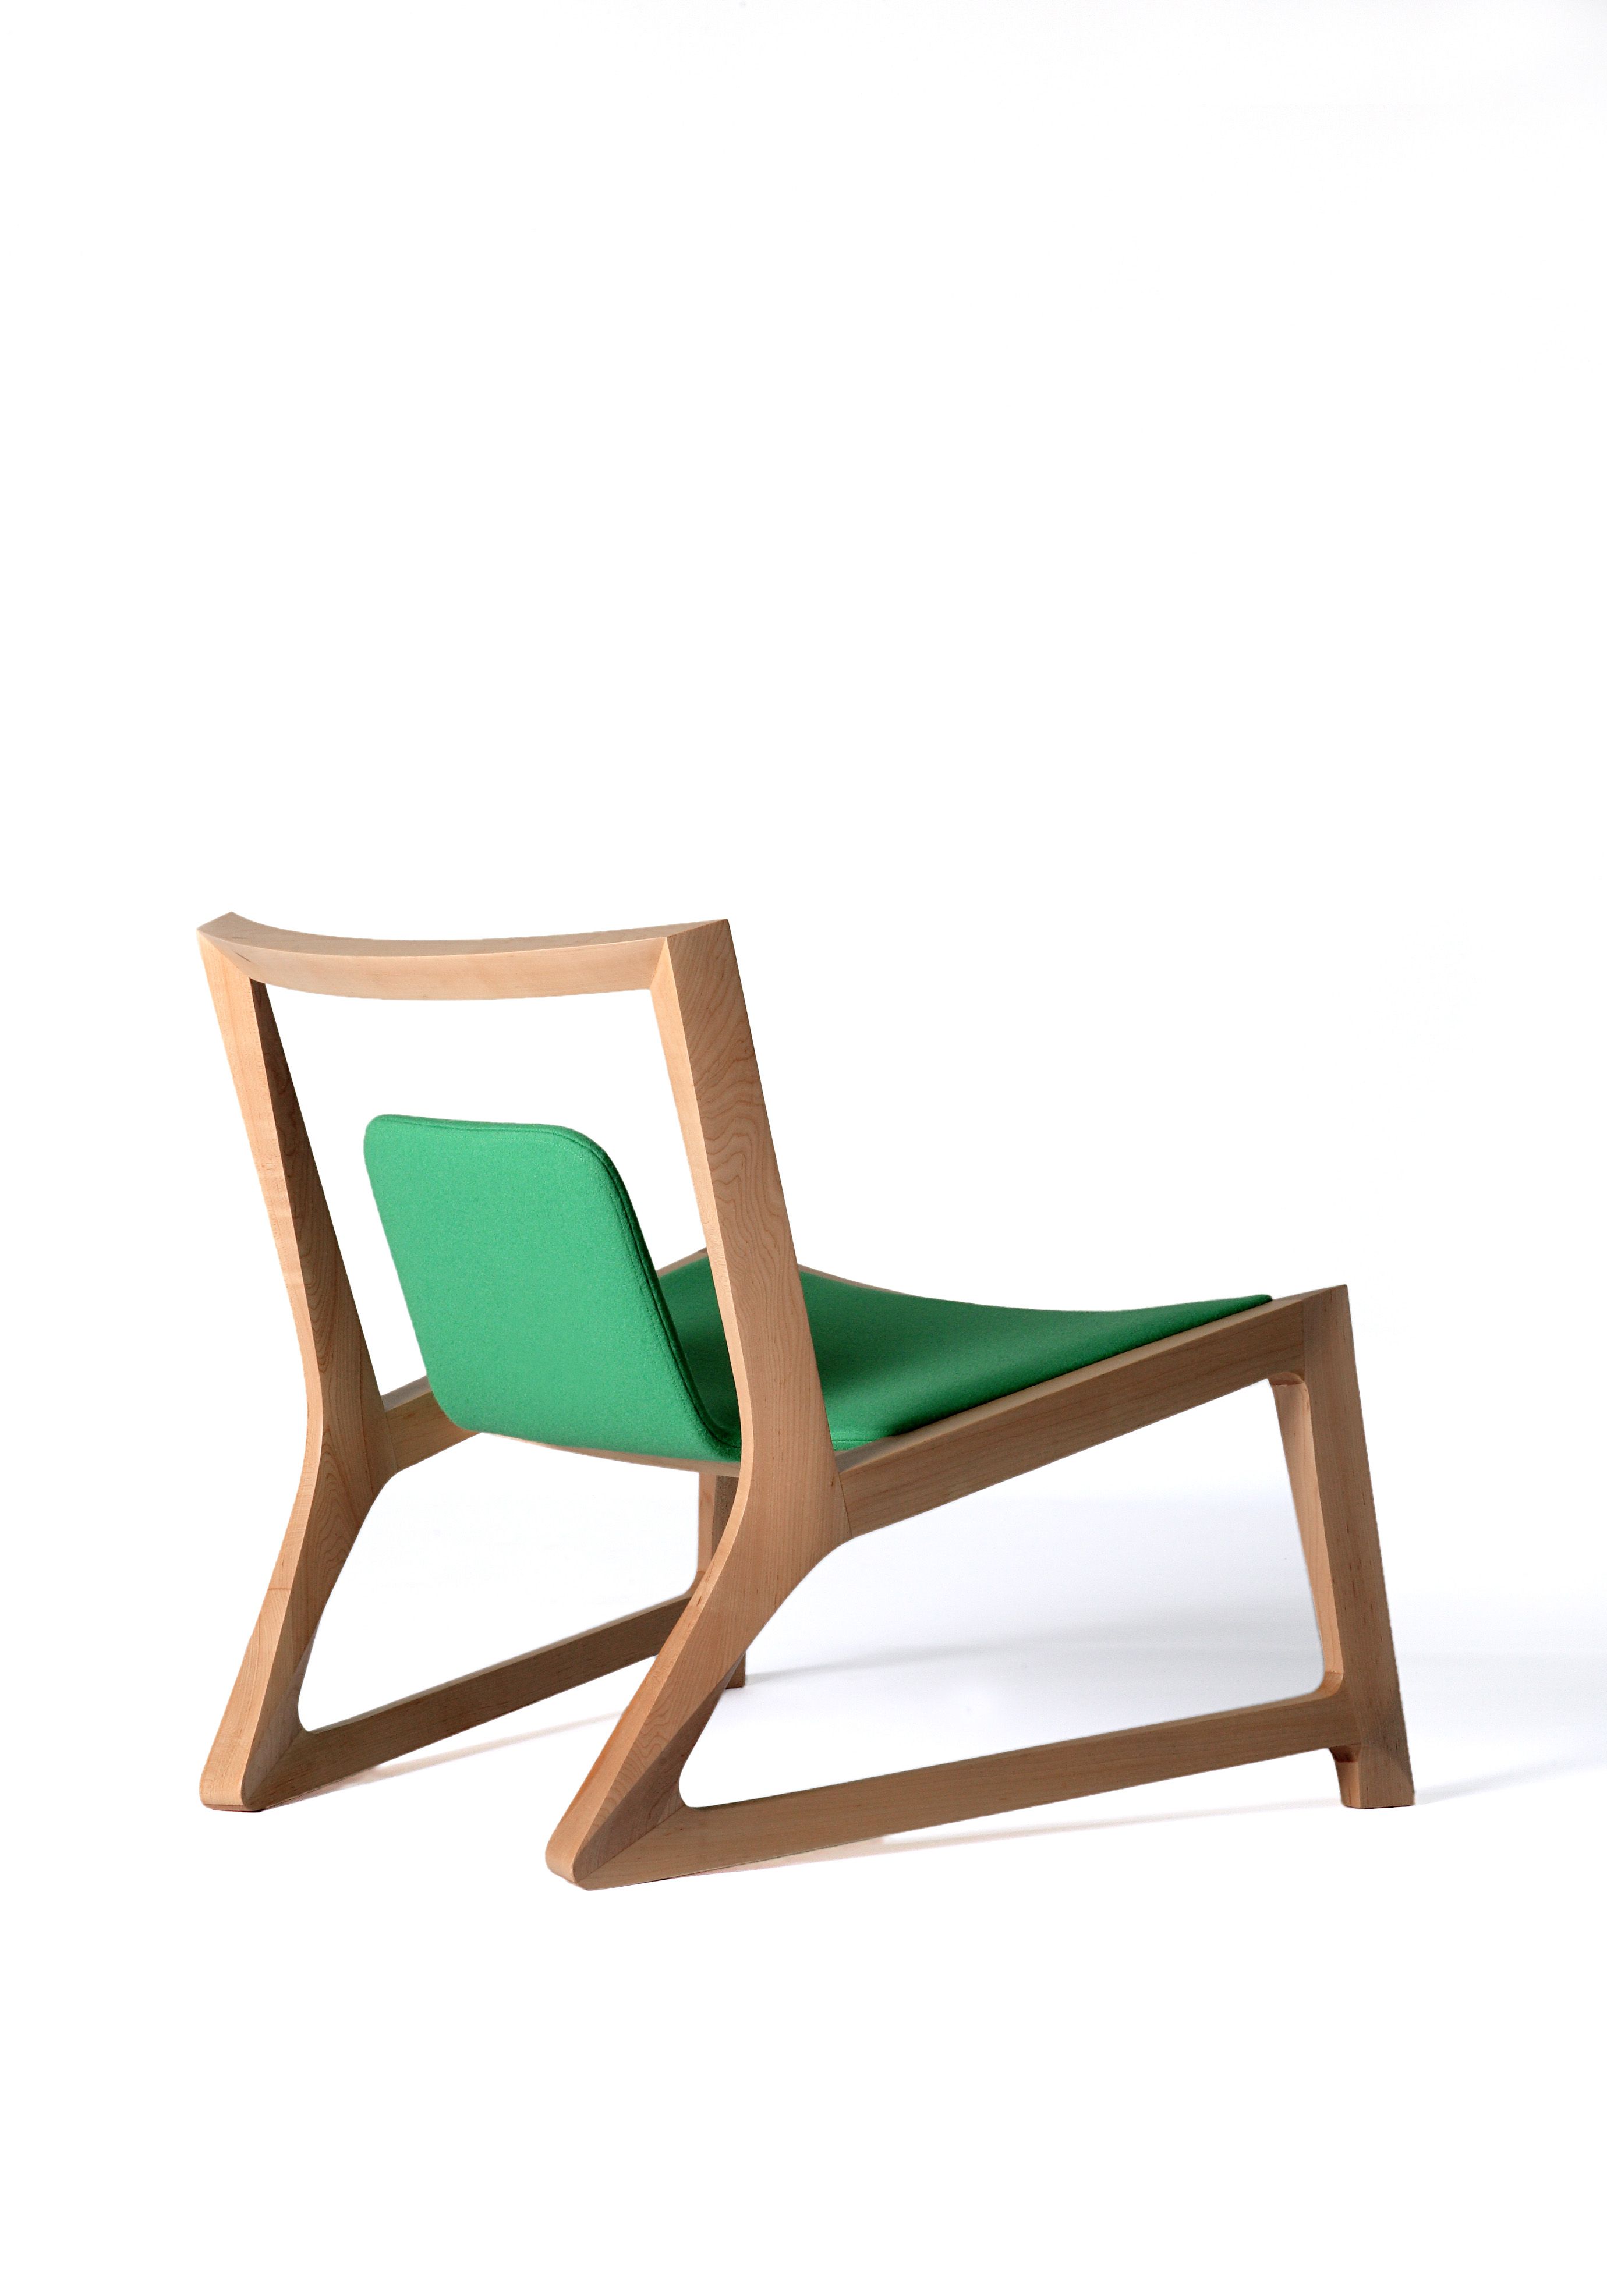 22 minimalist furniture ideas - best modern minimalism room furniture FANXSHH